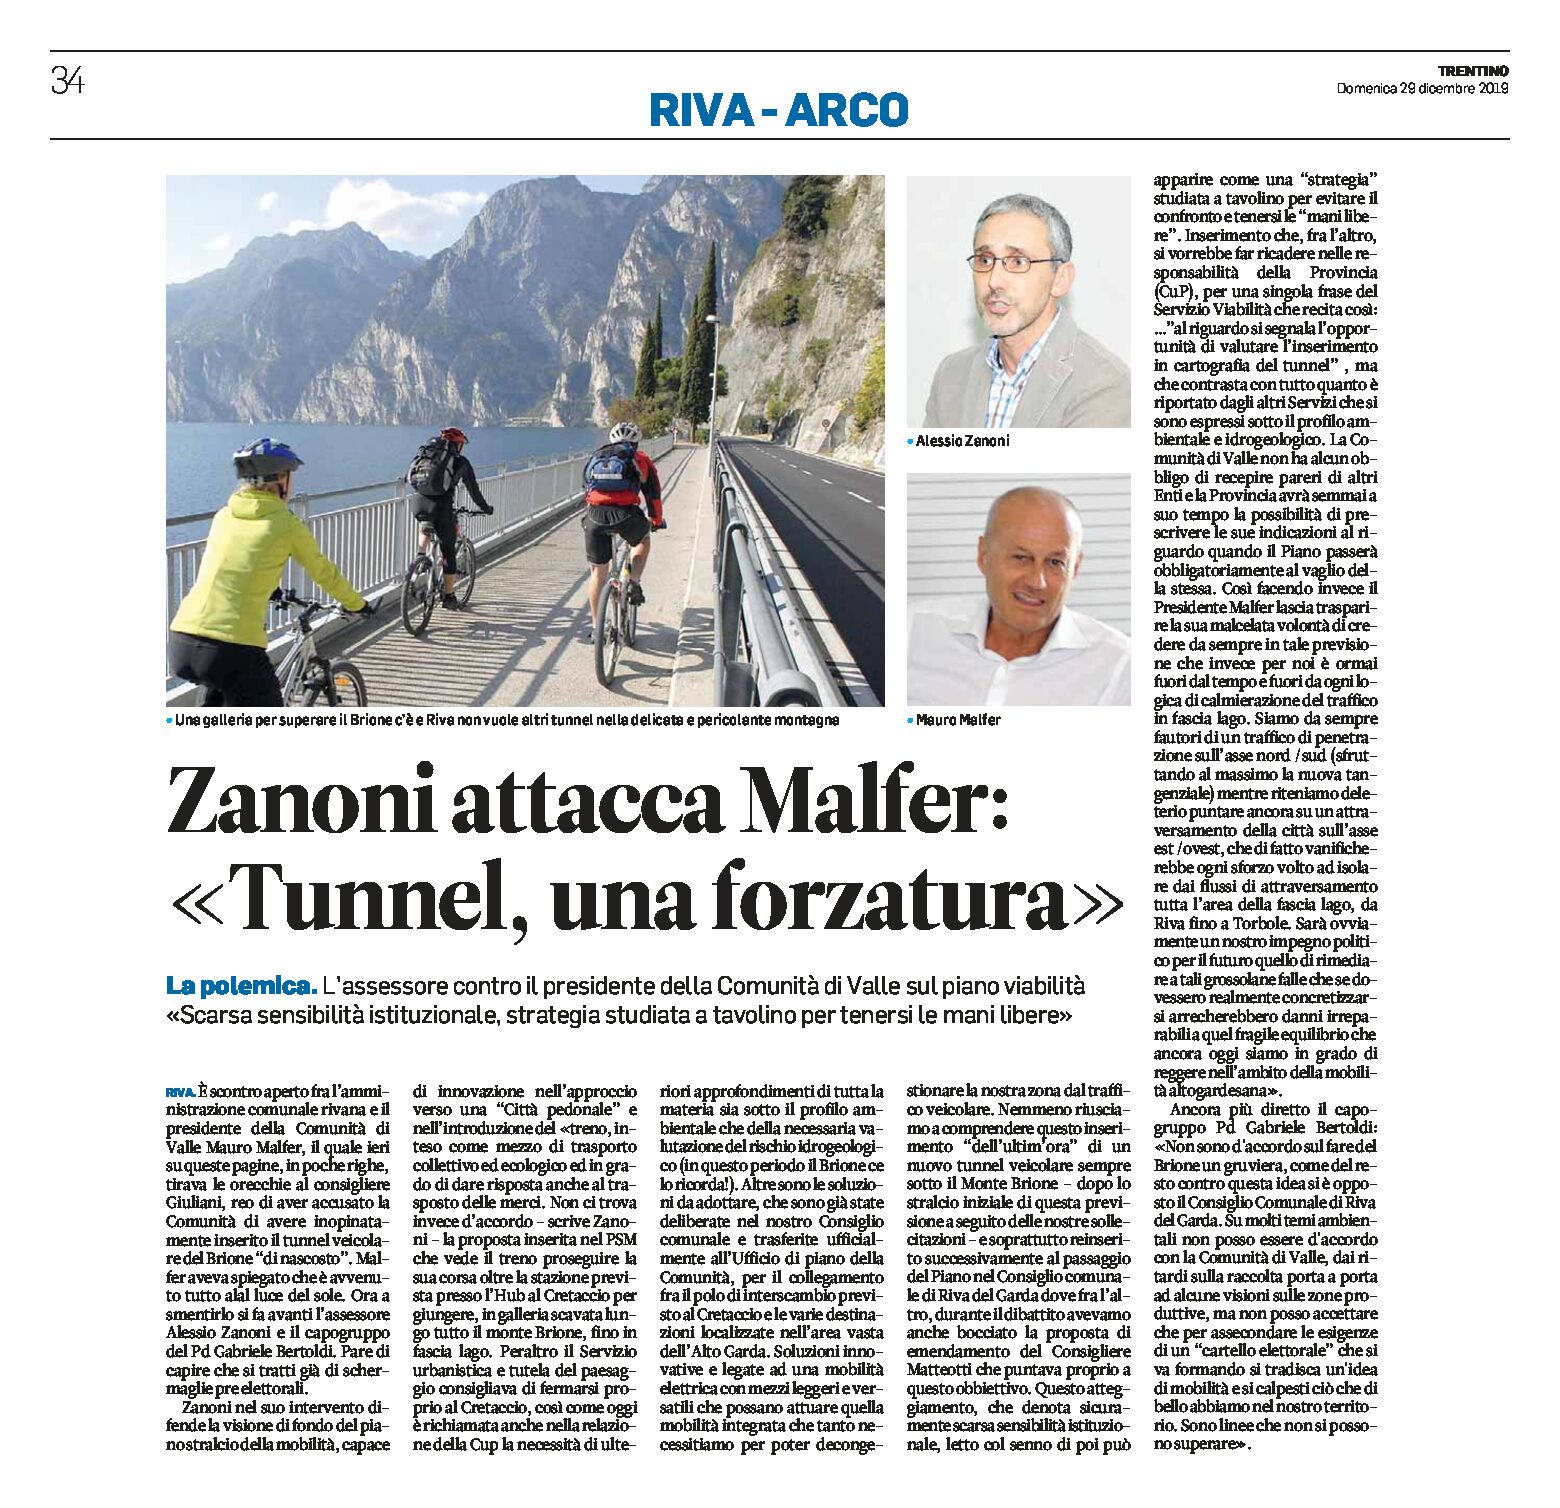 Riva, Brione: Zanoni attacca Malfer “tunnel, una forzatura”